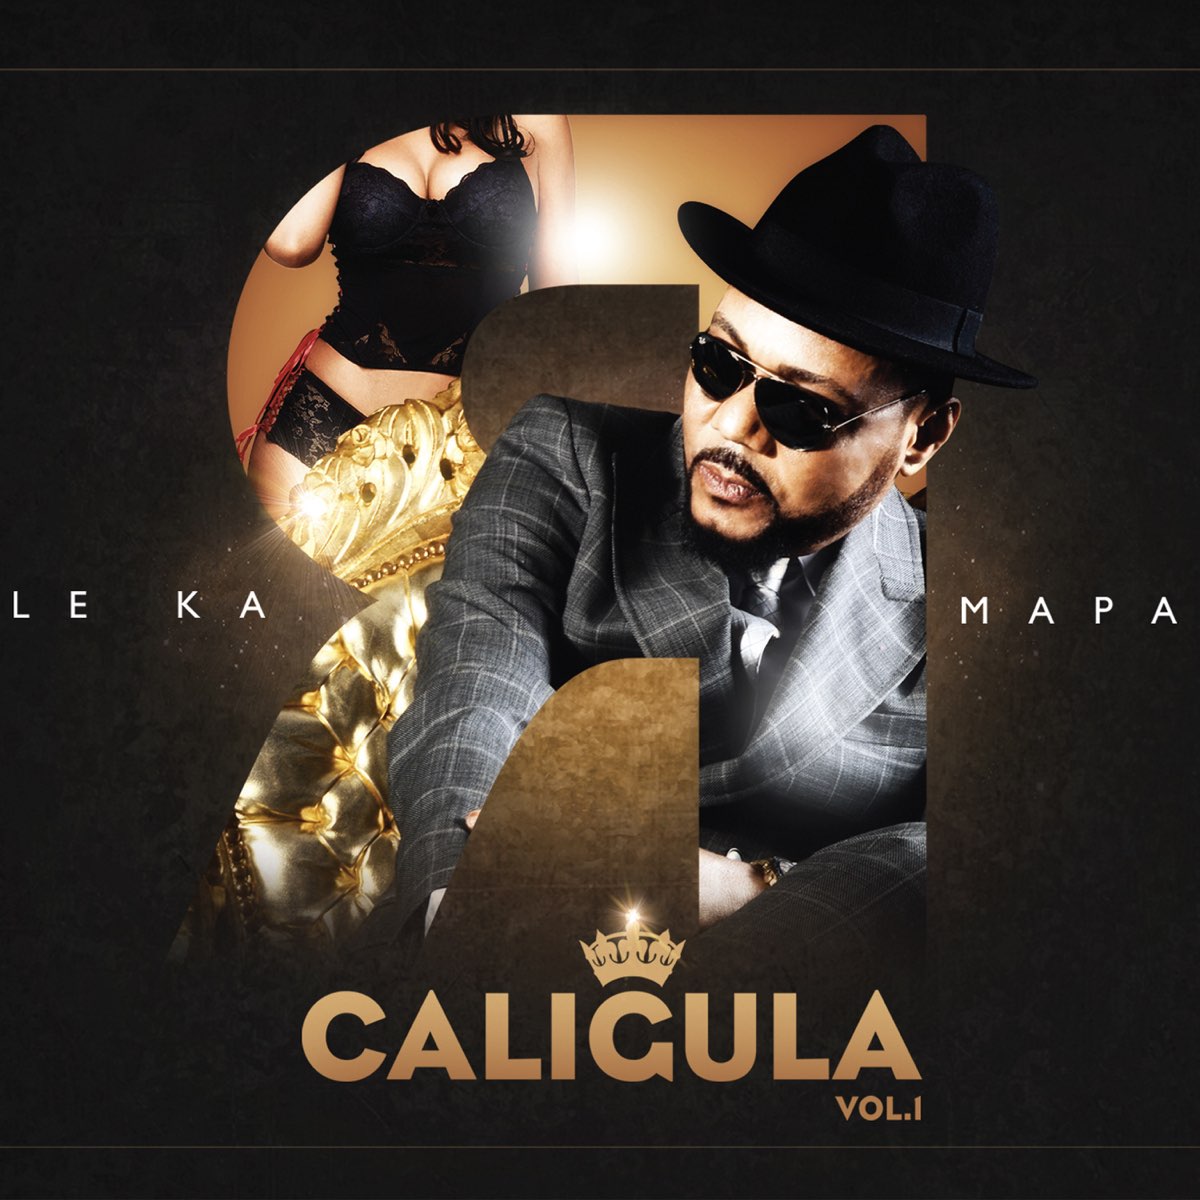 CALIGULA, Vol.1 by Le Karmapa on Apple Music